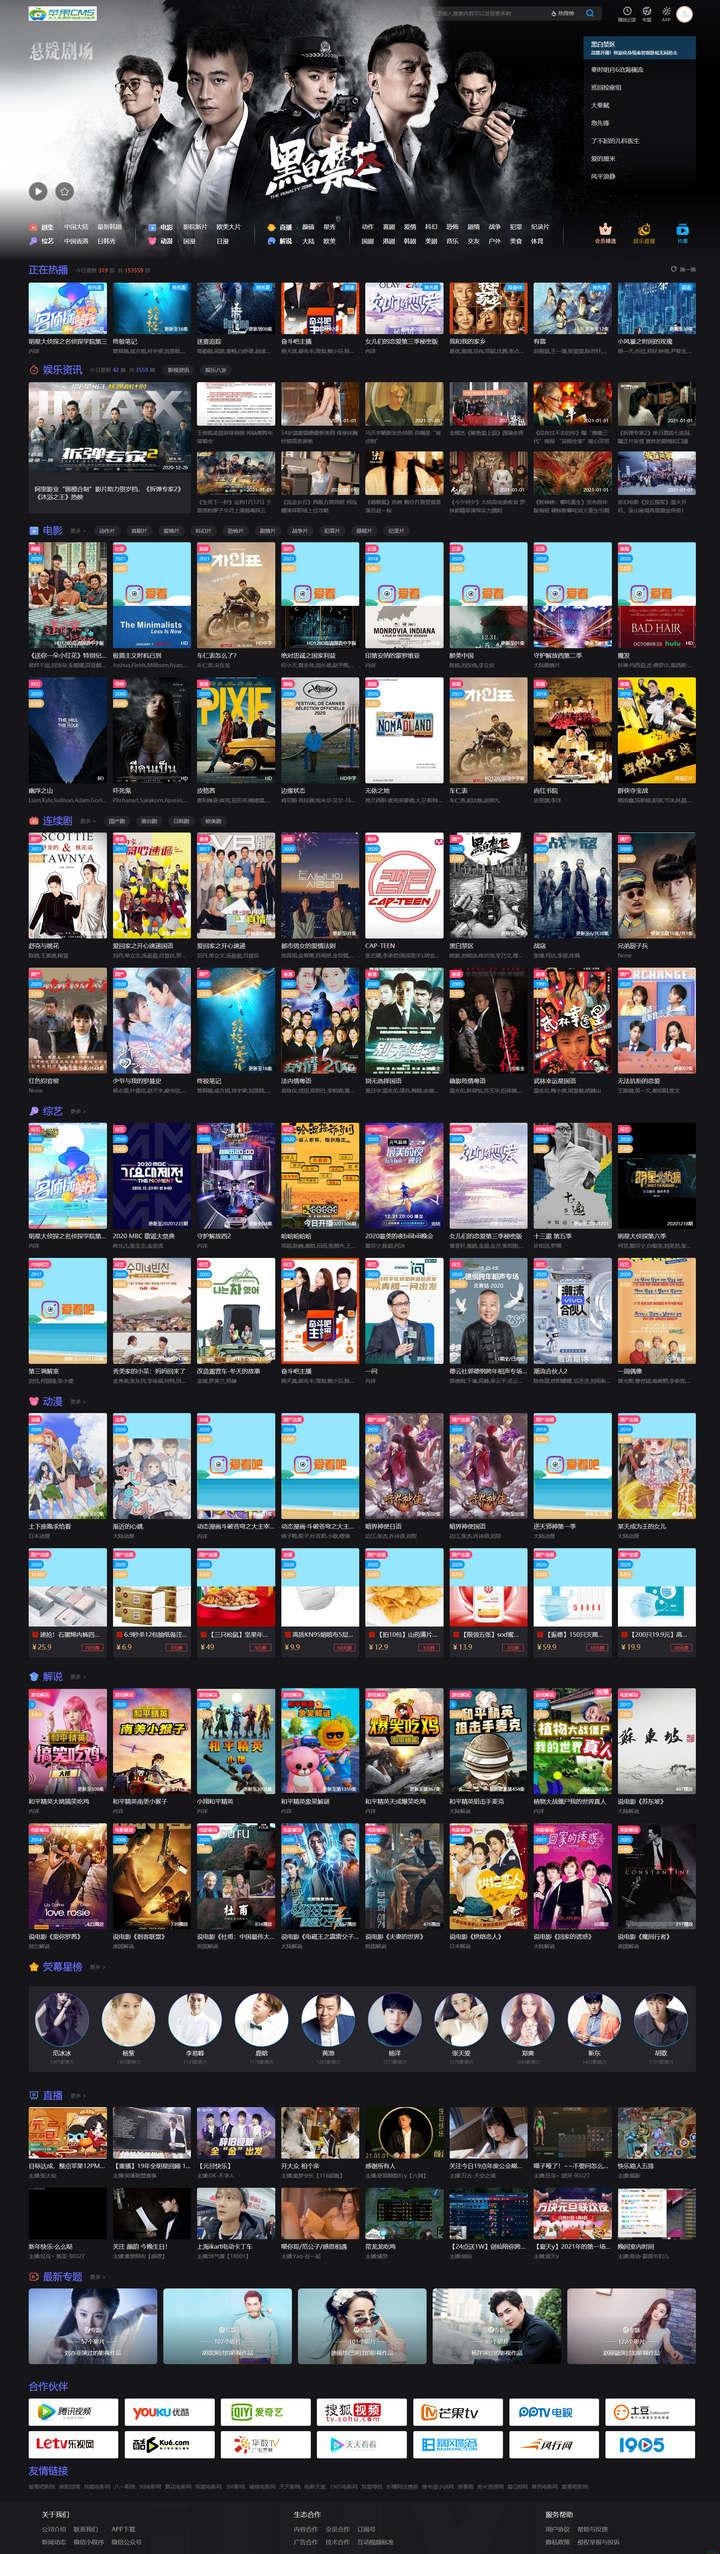 免费视频电影网站模板苹果cms10短视多功能主题网站源码